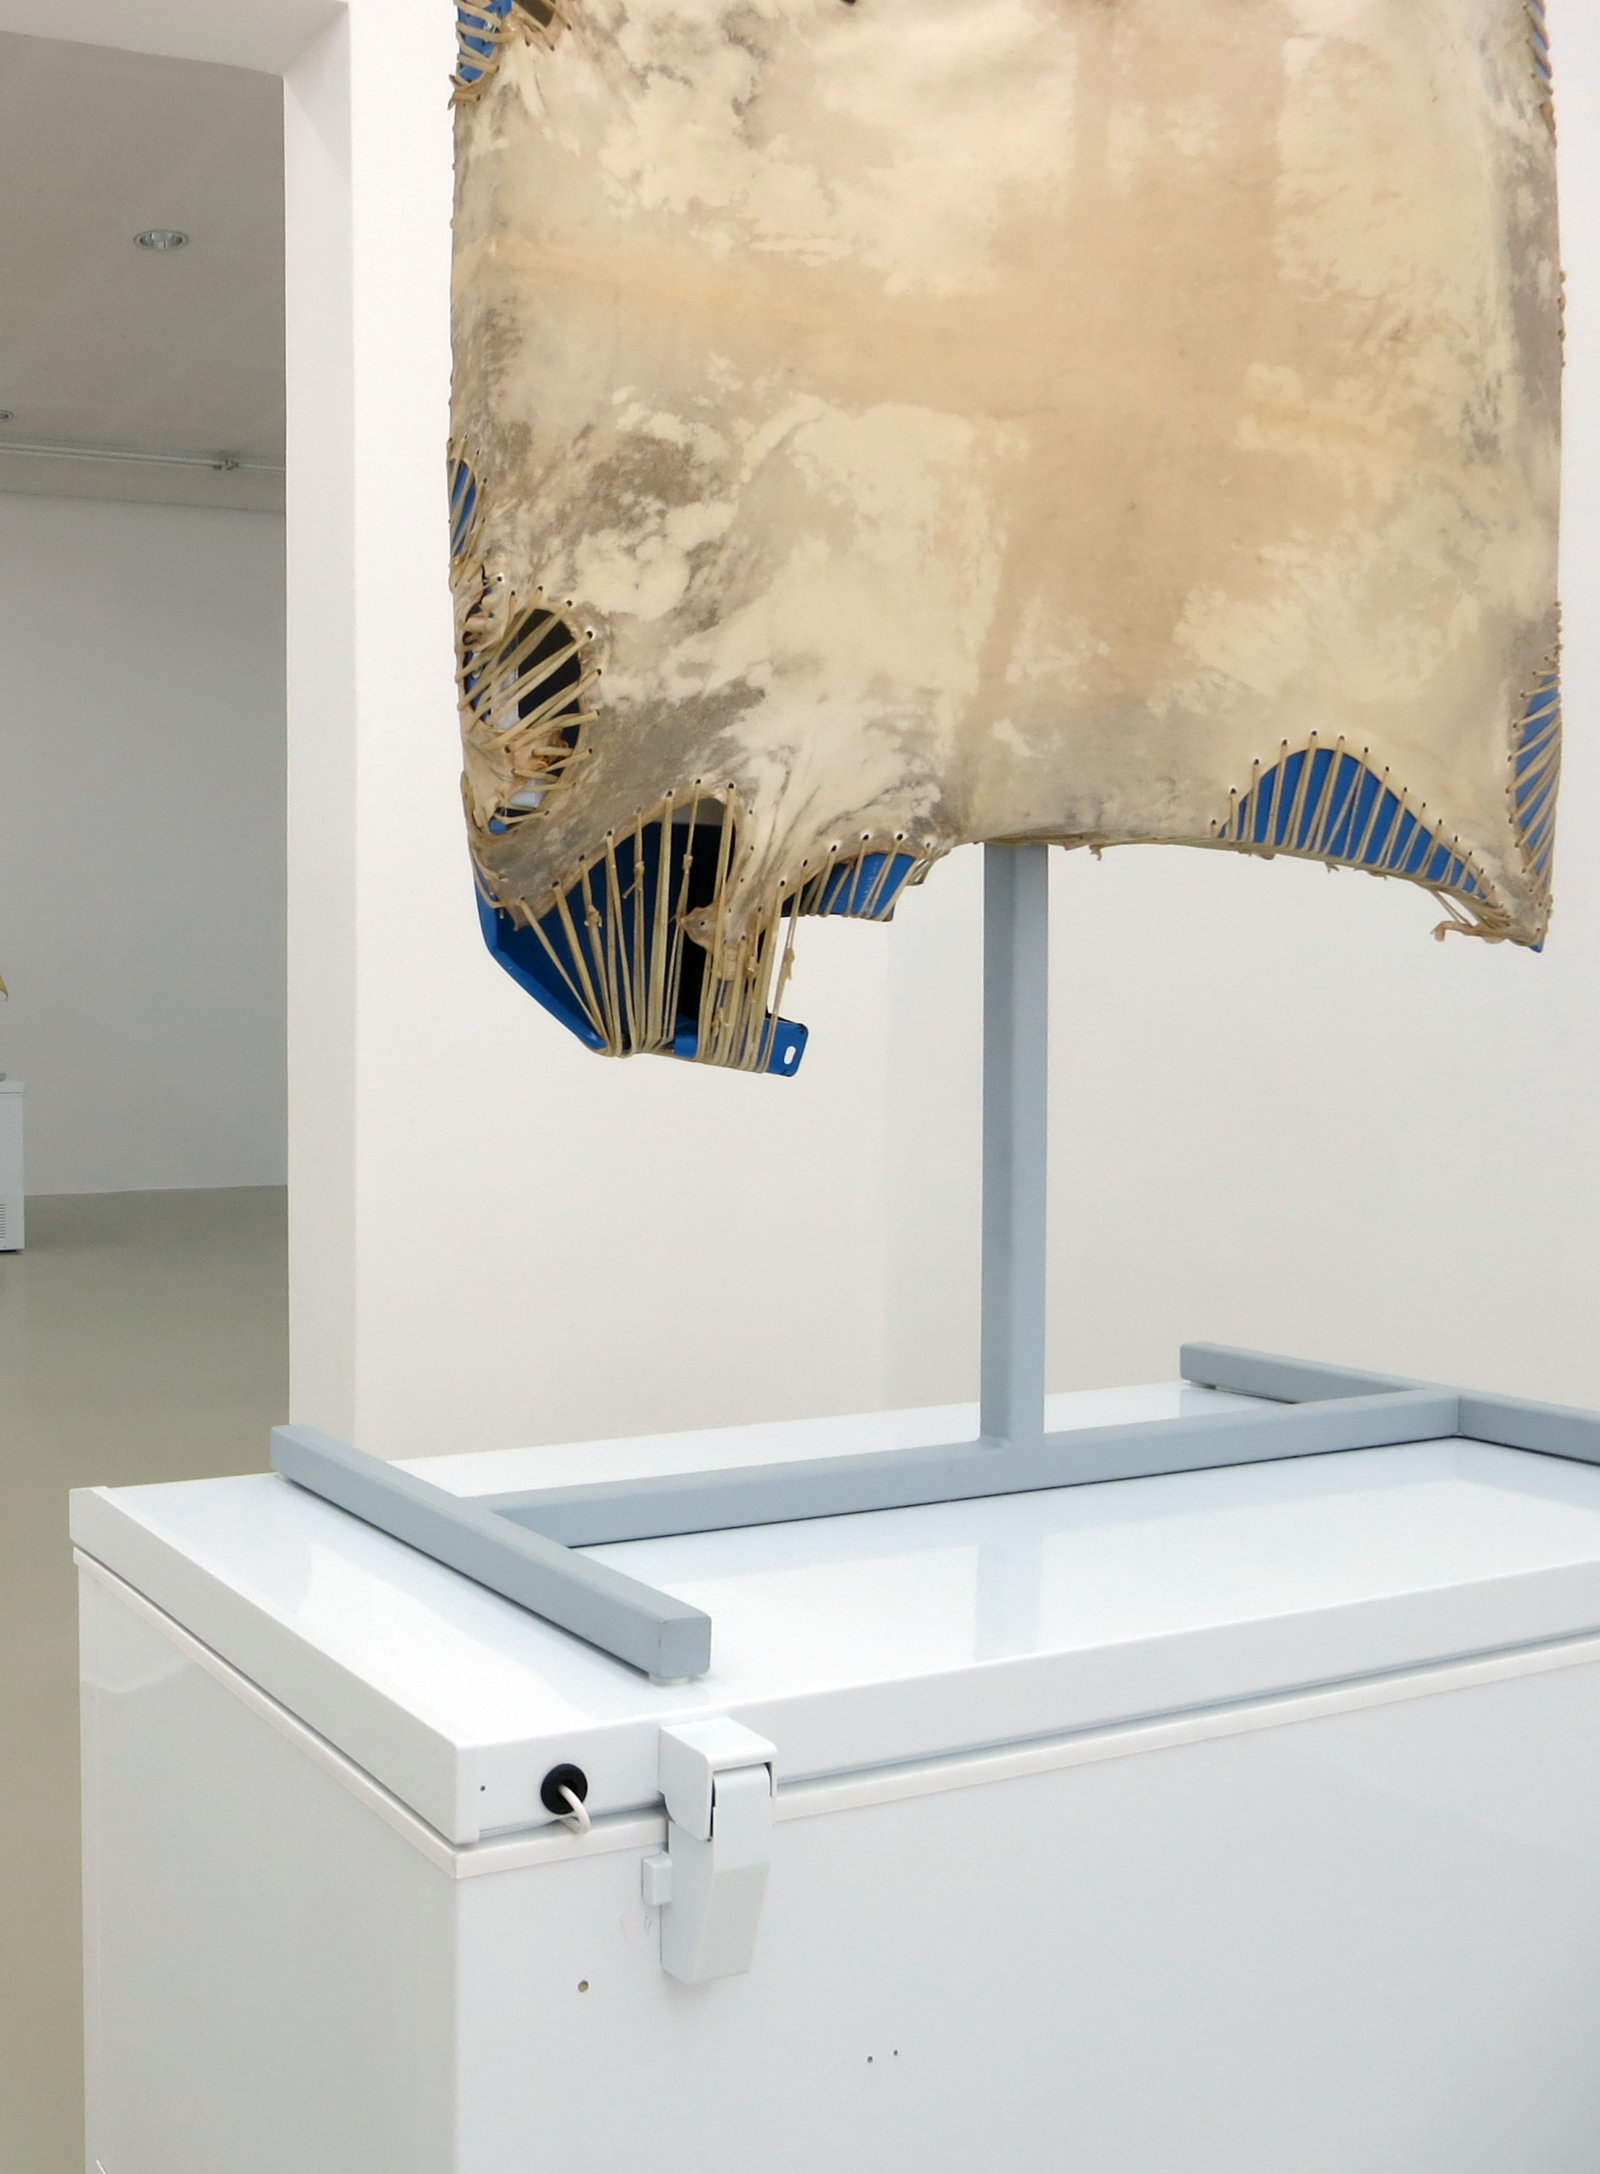 Brian Jungen, Mother Tongue (detail), 2013, steel, deer hide, vw fenders, freezer, 100 x 51 x 28 in. (256 x 130 x 71 cm)